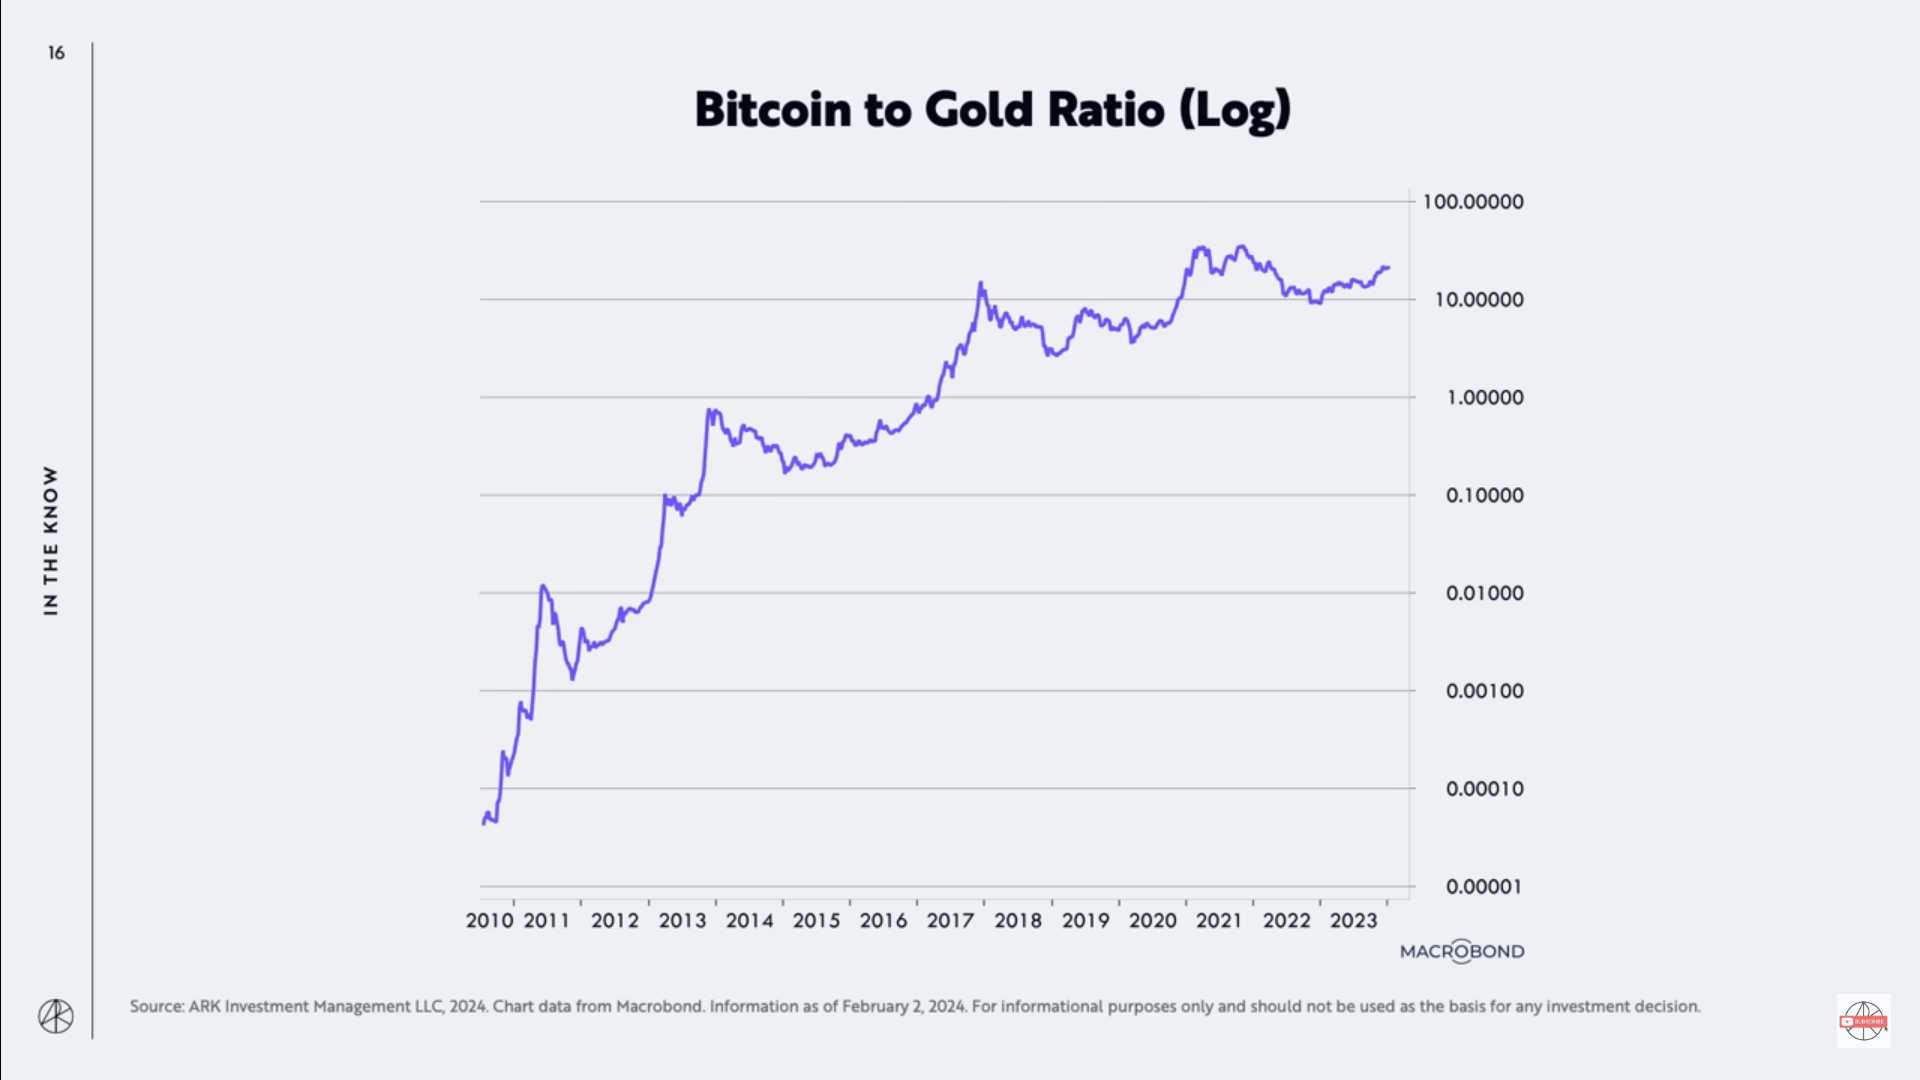 Η Cathie Wood της ARK Invest λέει ότι «Αντικατάσταση» χρυσού για Bitcoin (BTC) βρίσκεται τώρα σε εξέλιξη - The Daily Hodl